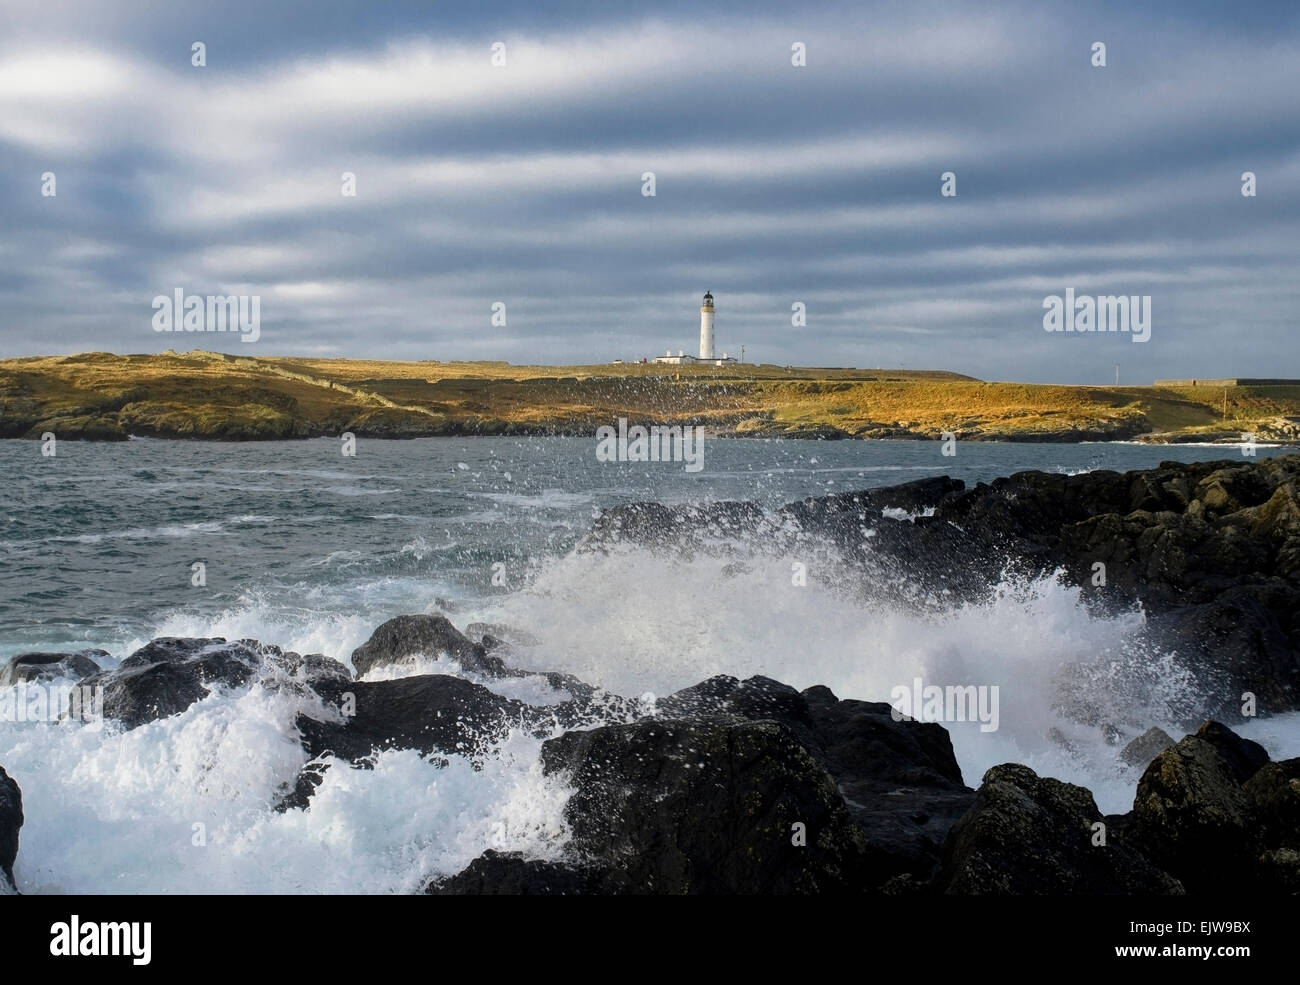 portnahaven lighthouse crashing waves Stock Photo